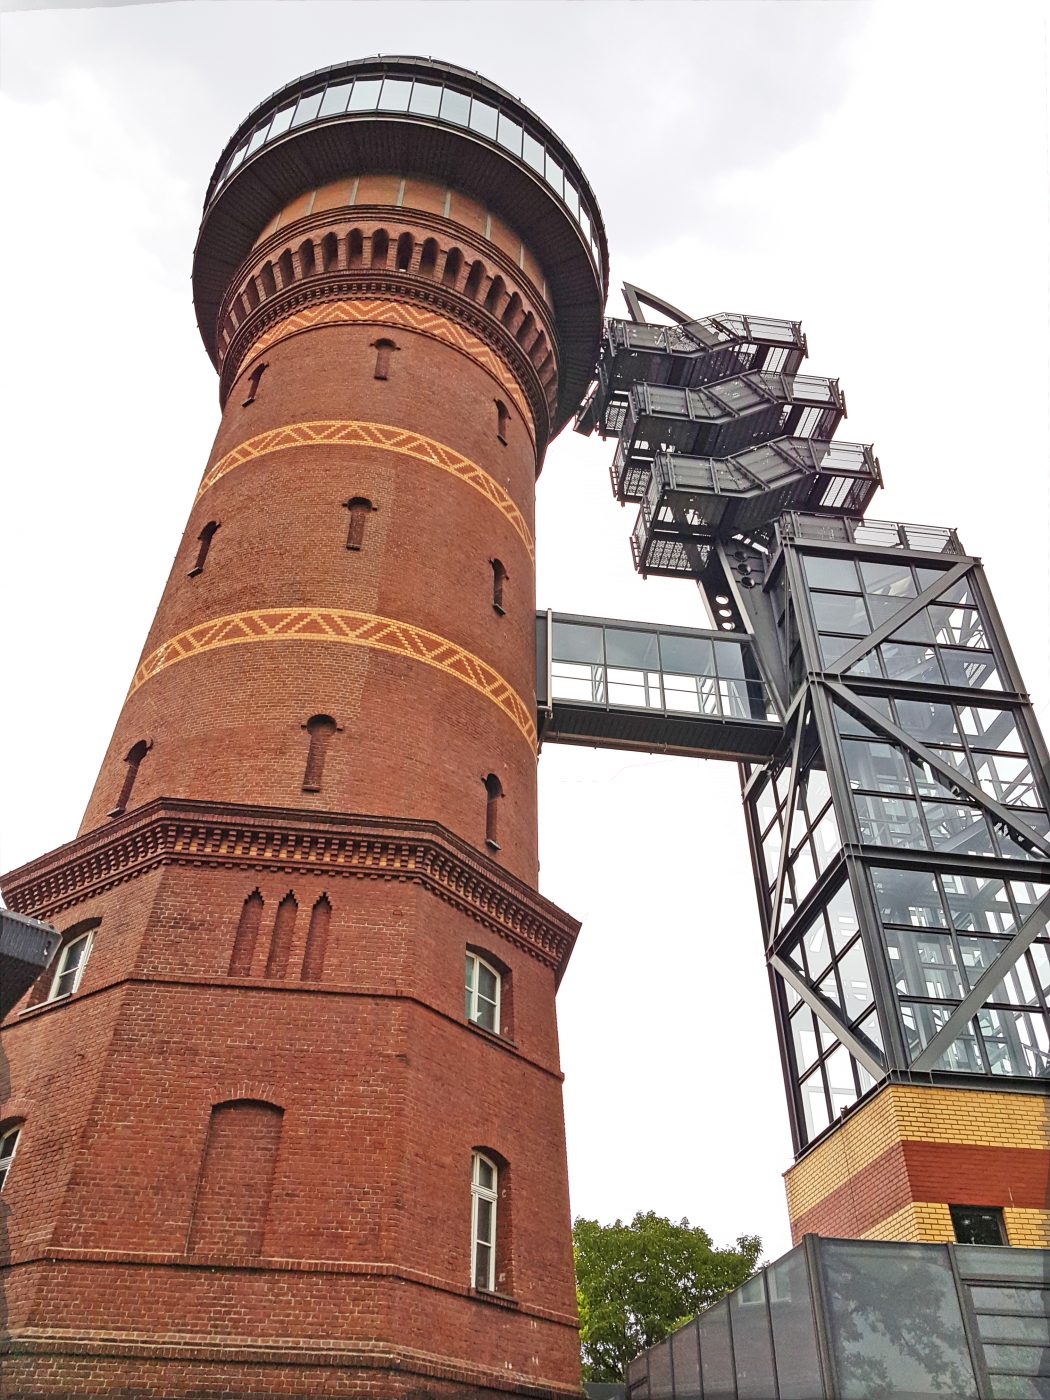 Das Bild zeigt das Aquarius Wassermuseum in Mülheim an der Ruhr